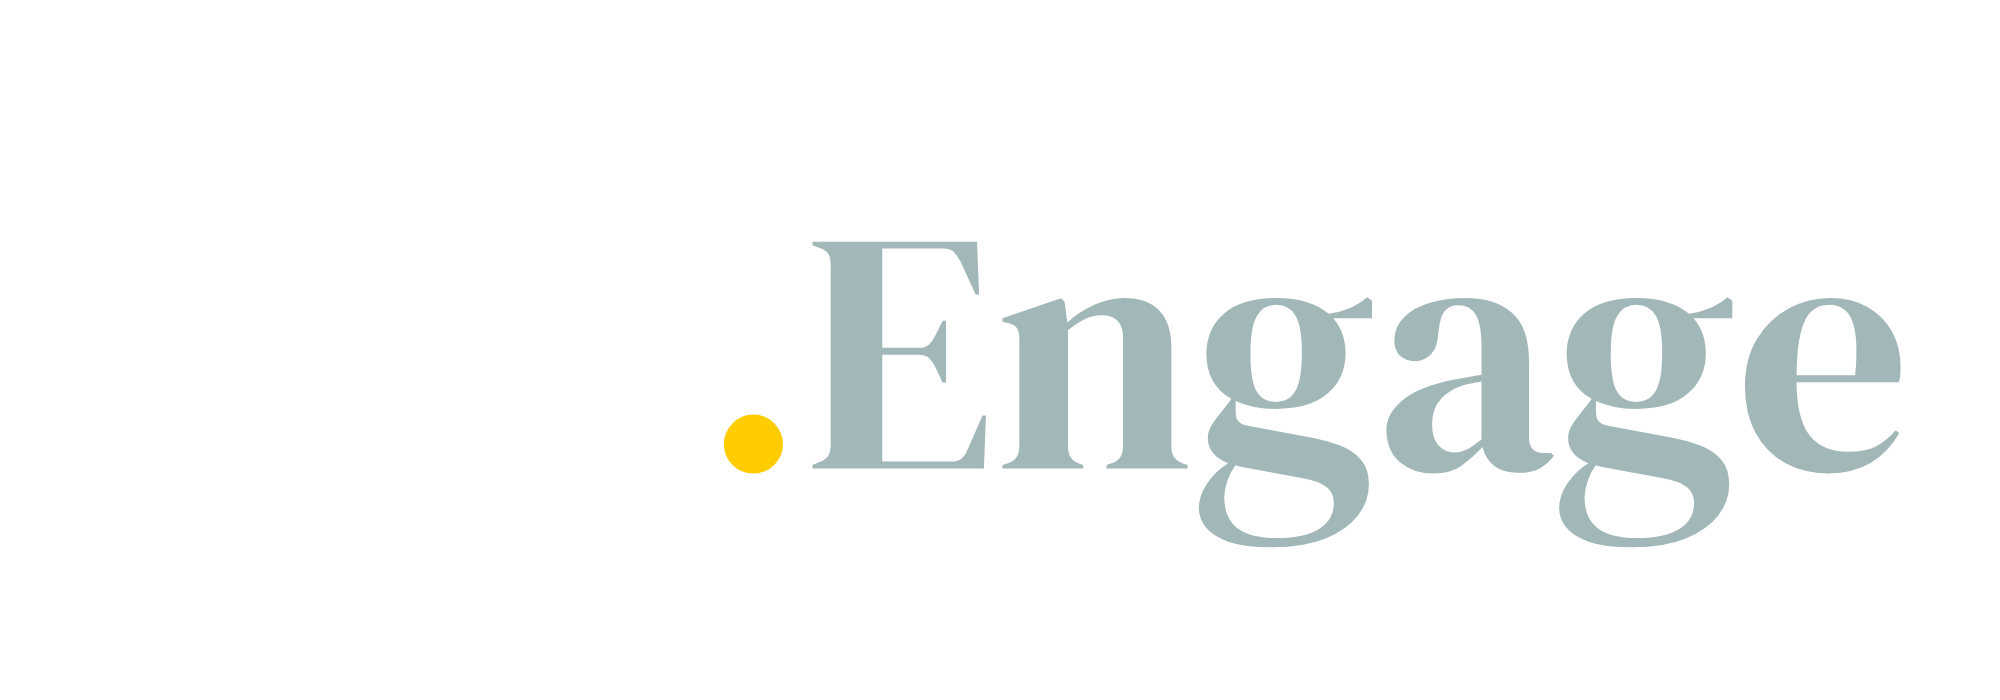 Logo key engage transparant